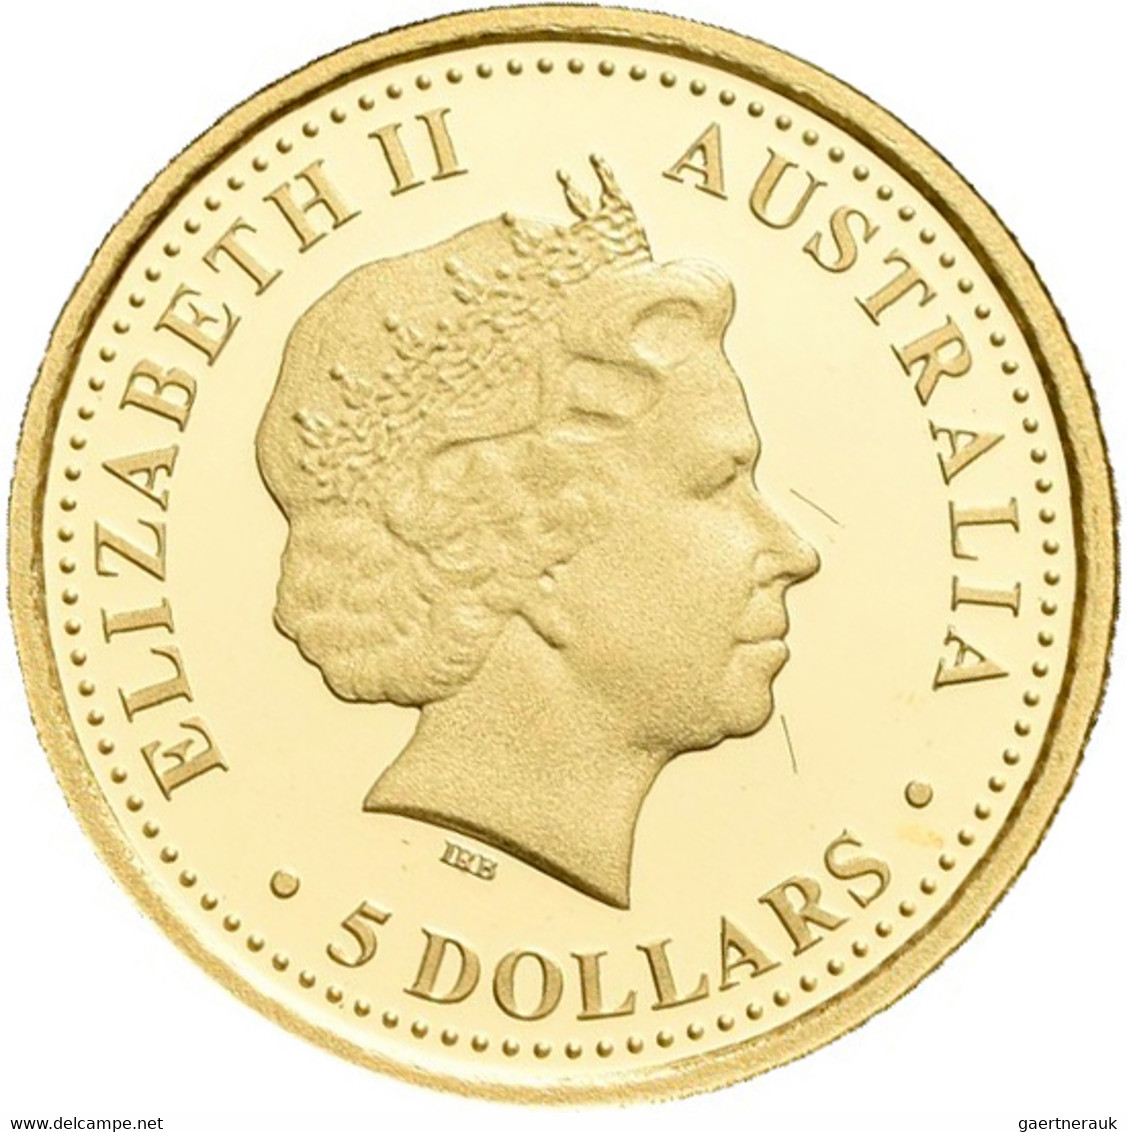 Australien - Anlagegold: Discover Australia: 5 x 5 AUD 2008, je 1/25 OZ 999/1000